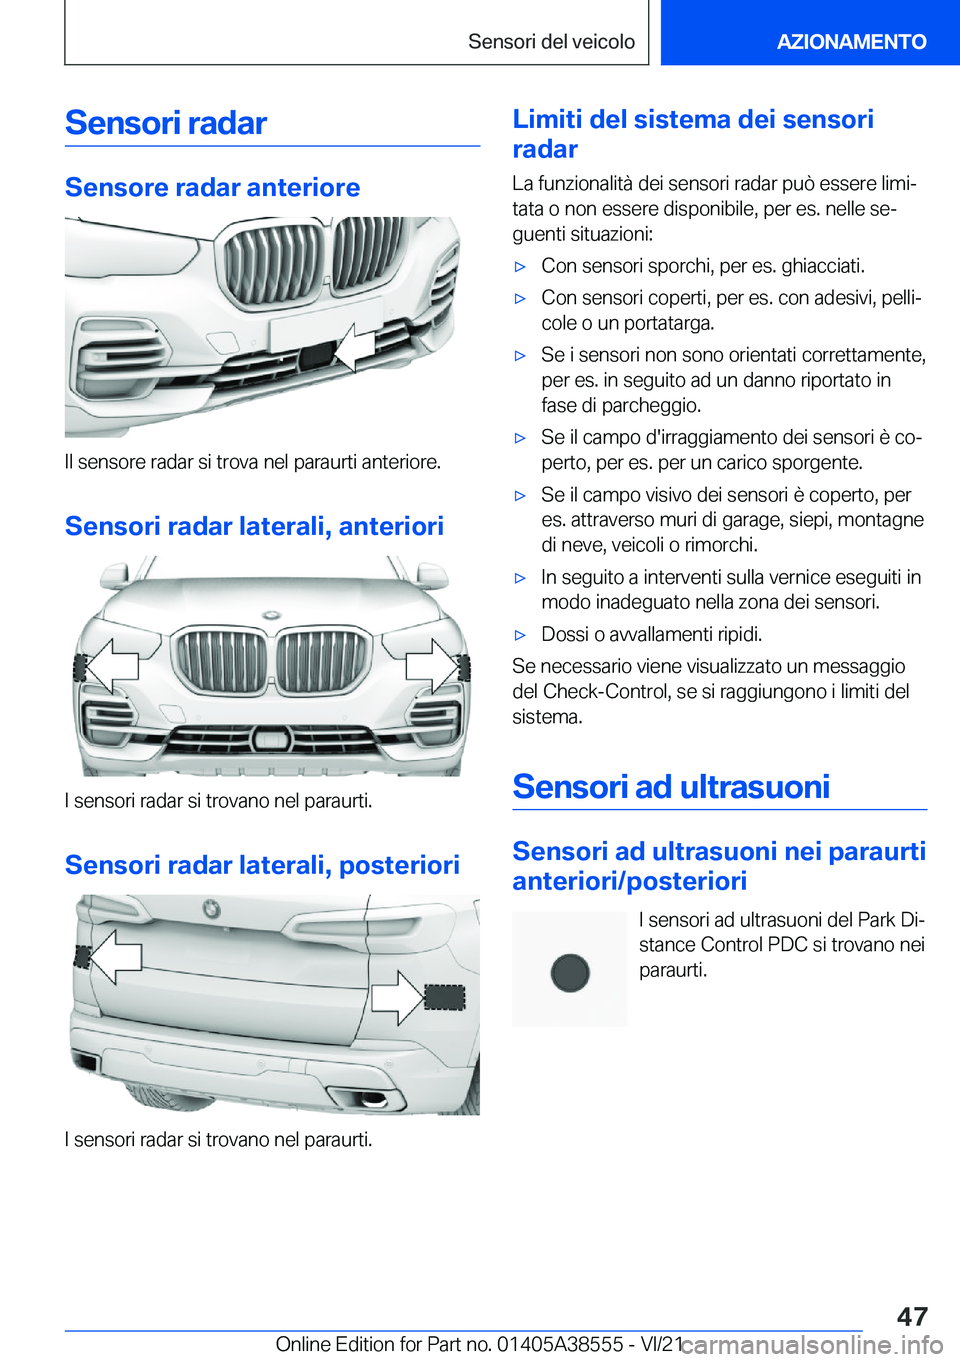 BMW X6 2022  Libretti Di Uso E manutenzione (in Italian) �S�e�n�s�o�r�i��r�a�d�a�r
�S�e�n�s�o�r�e��r�a�d�a�r��a�n�t�e�r�i�o�r�e
�I�l��s�e�n�s�o�r�e��r�a�d�a�r��s�i��t�r�o�v�a��n�e�l��p�a�r�a�u�r�t�i��a�n�t�e�r�i�o�r�e�.�S�e�n�s�o�r�i��r�a�d�a�r�